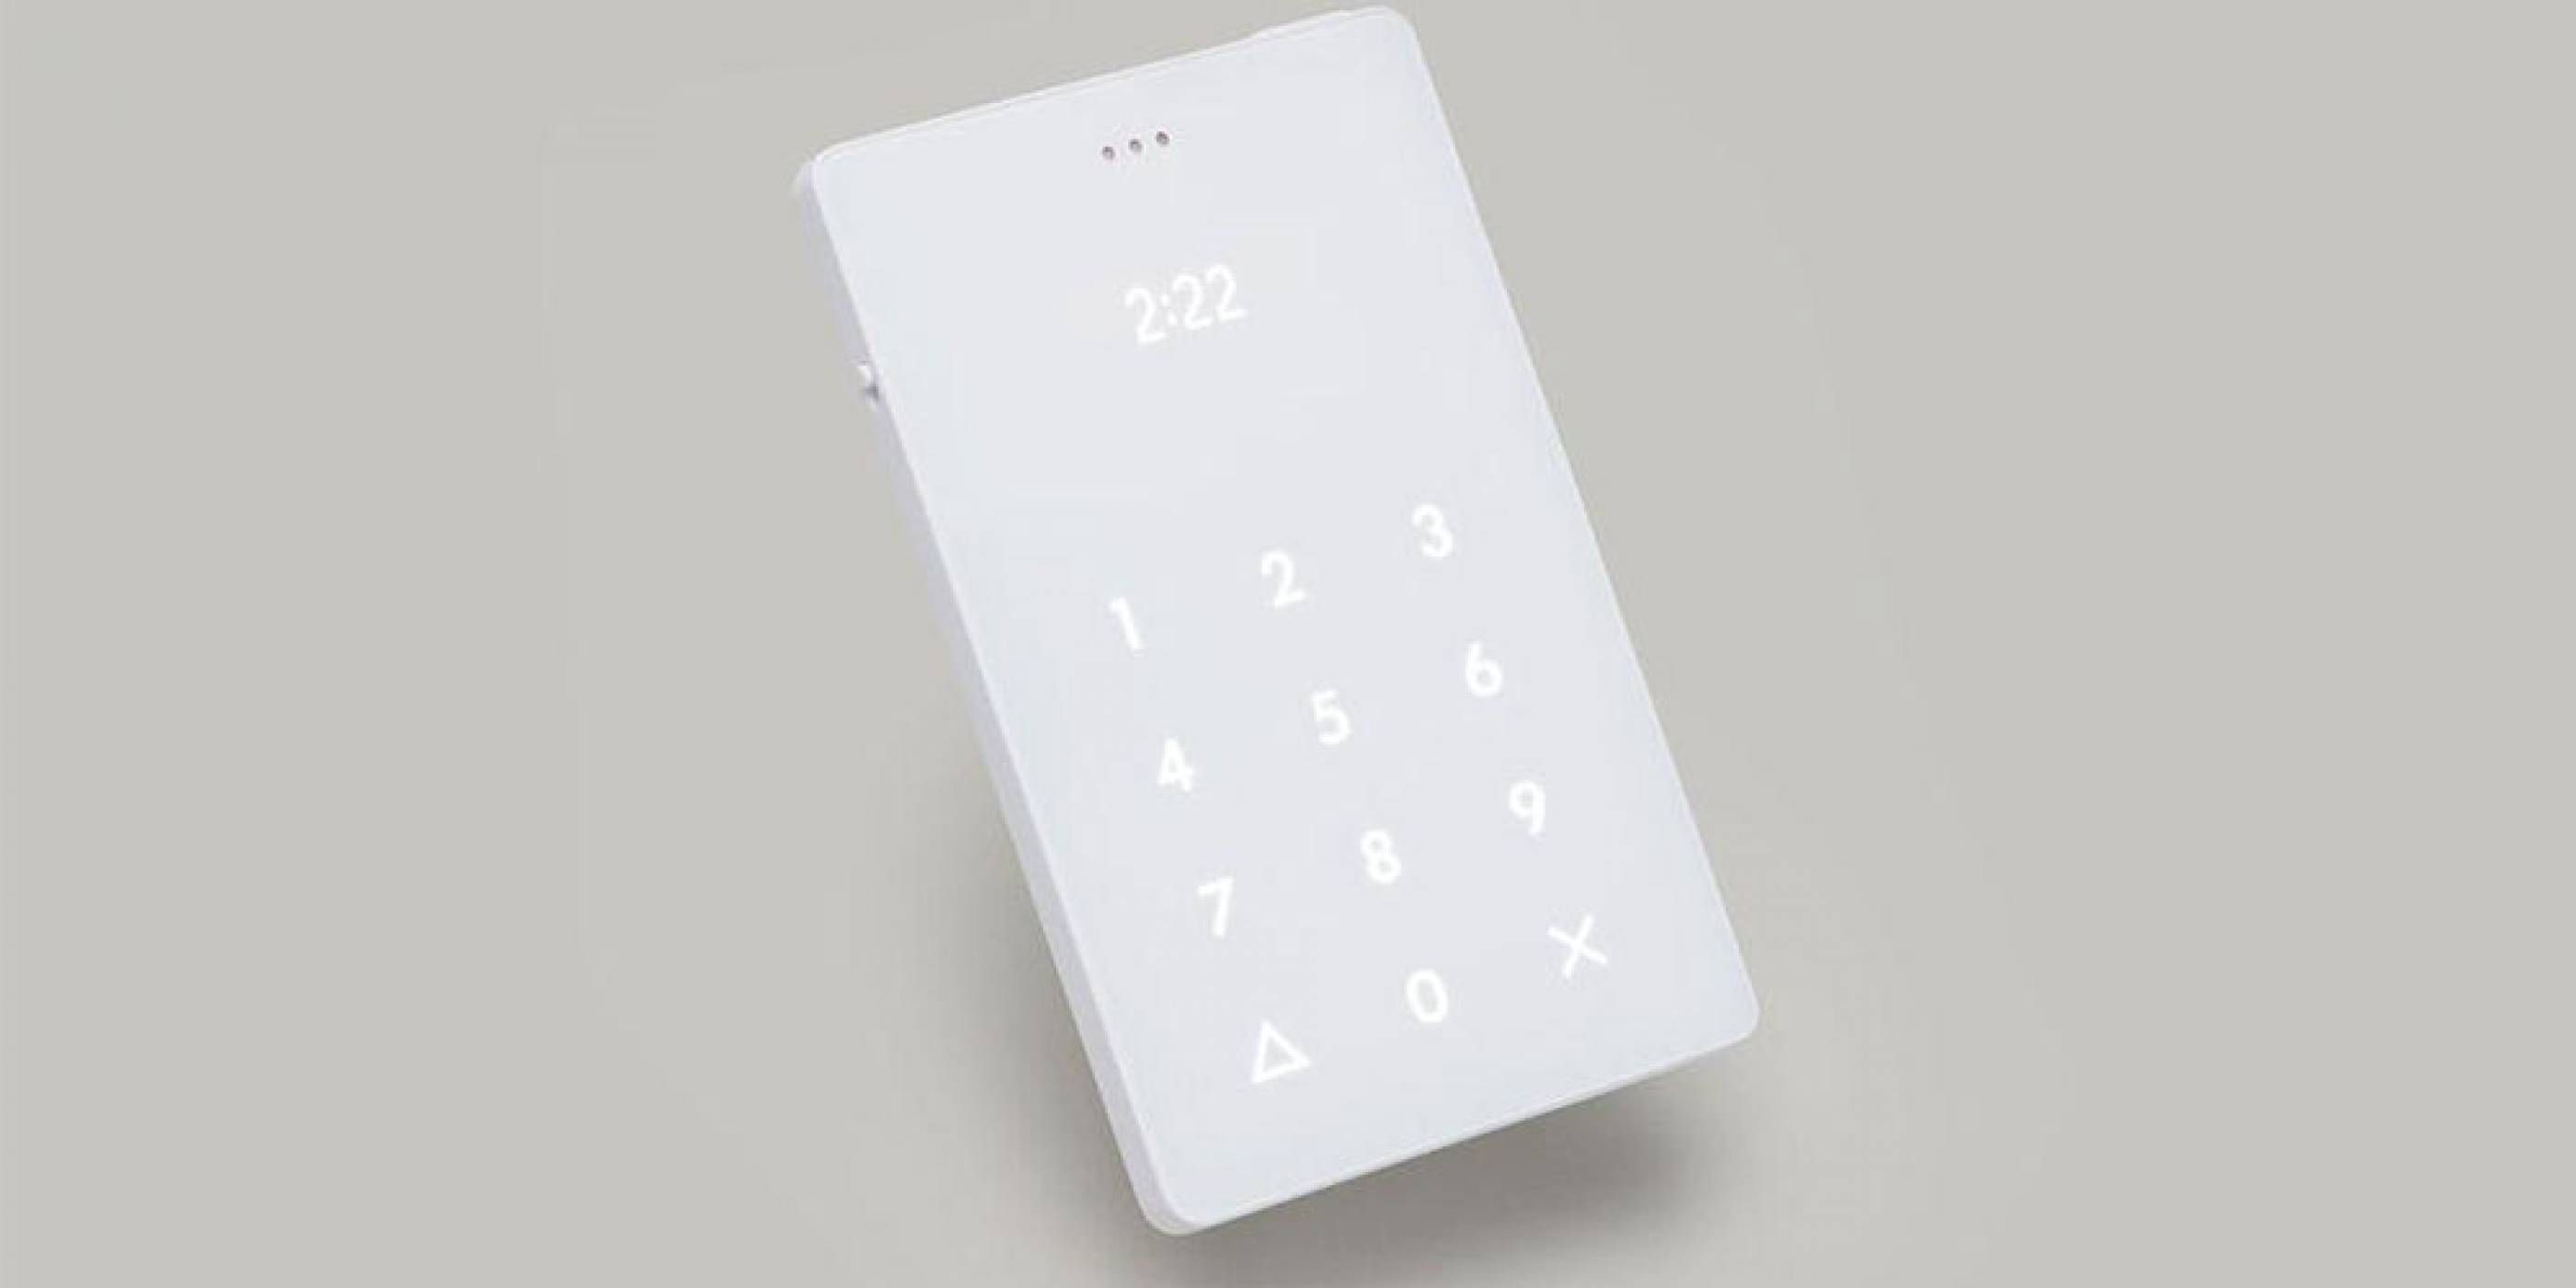 The Light Phone е минималистичен телефон, който има една-единствена функция